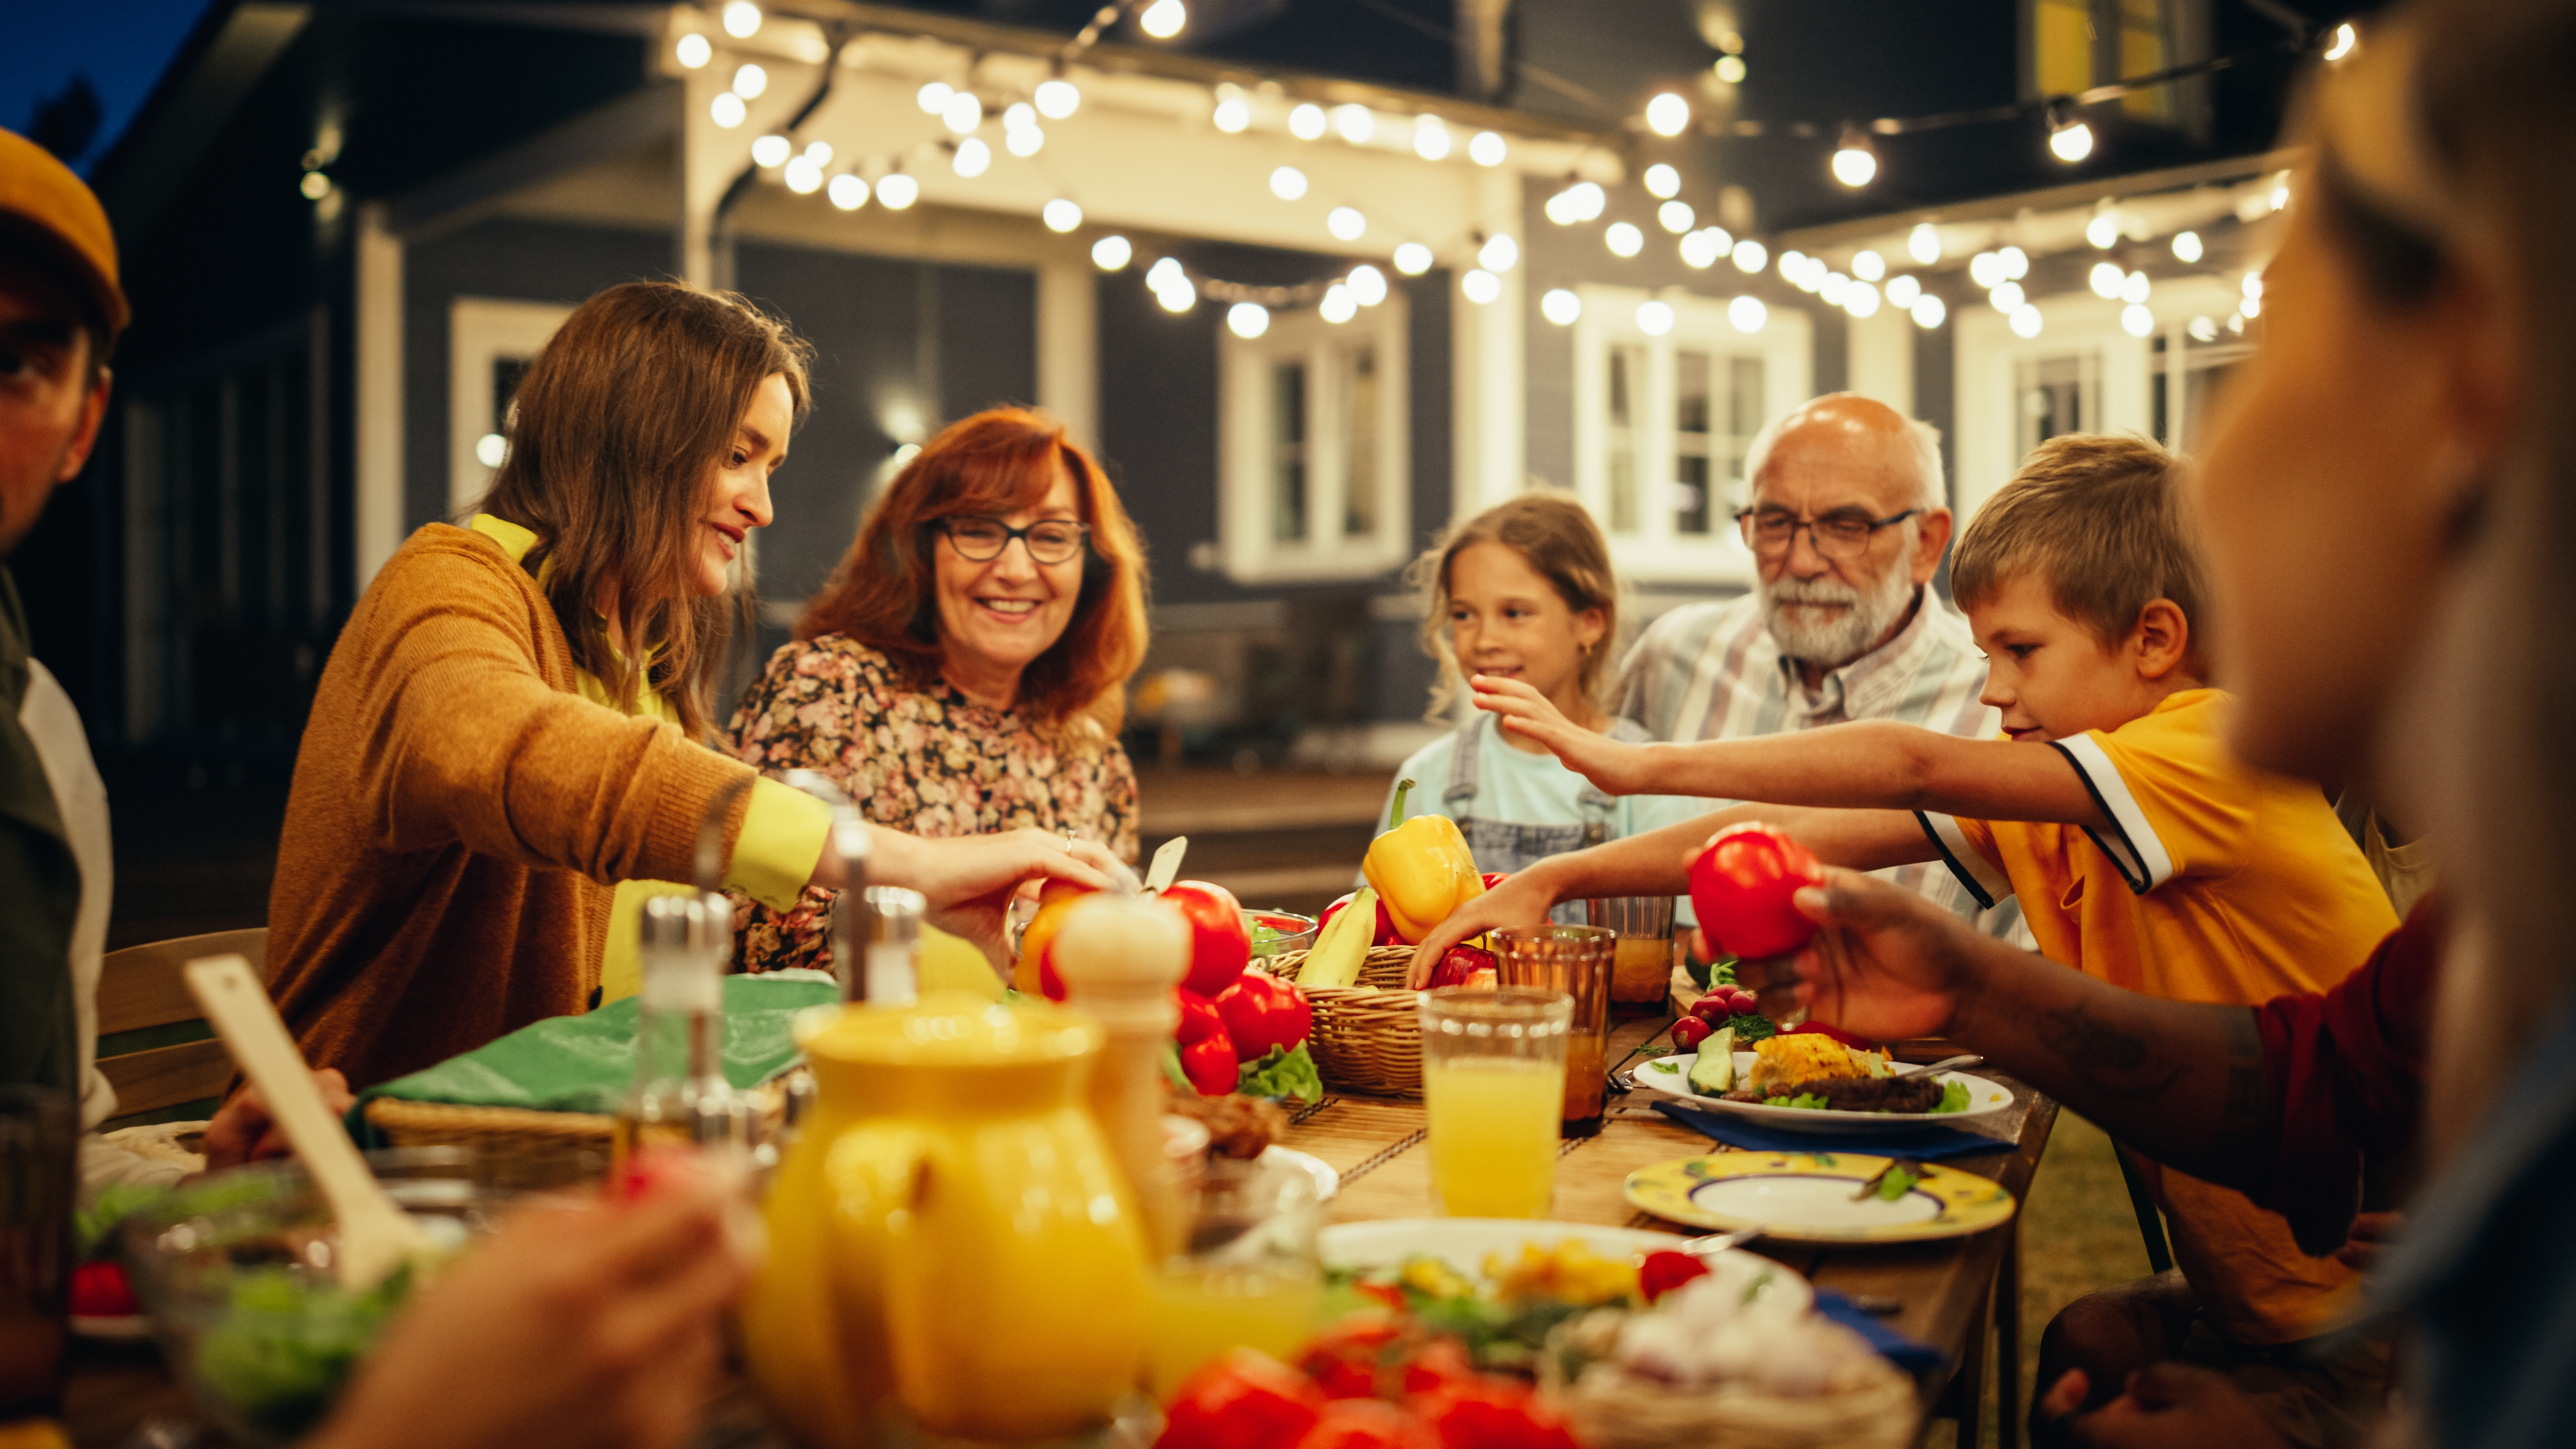 Happy family dinner | Shutterstock